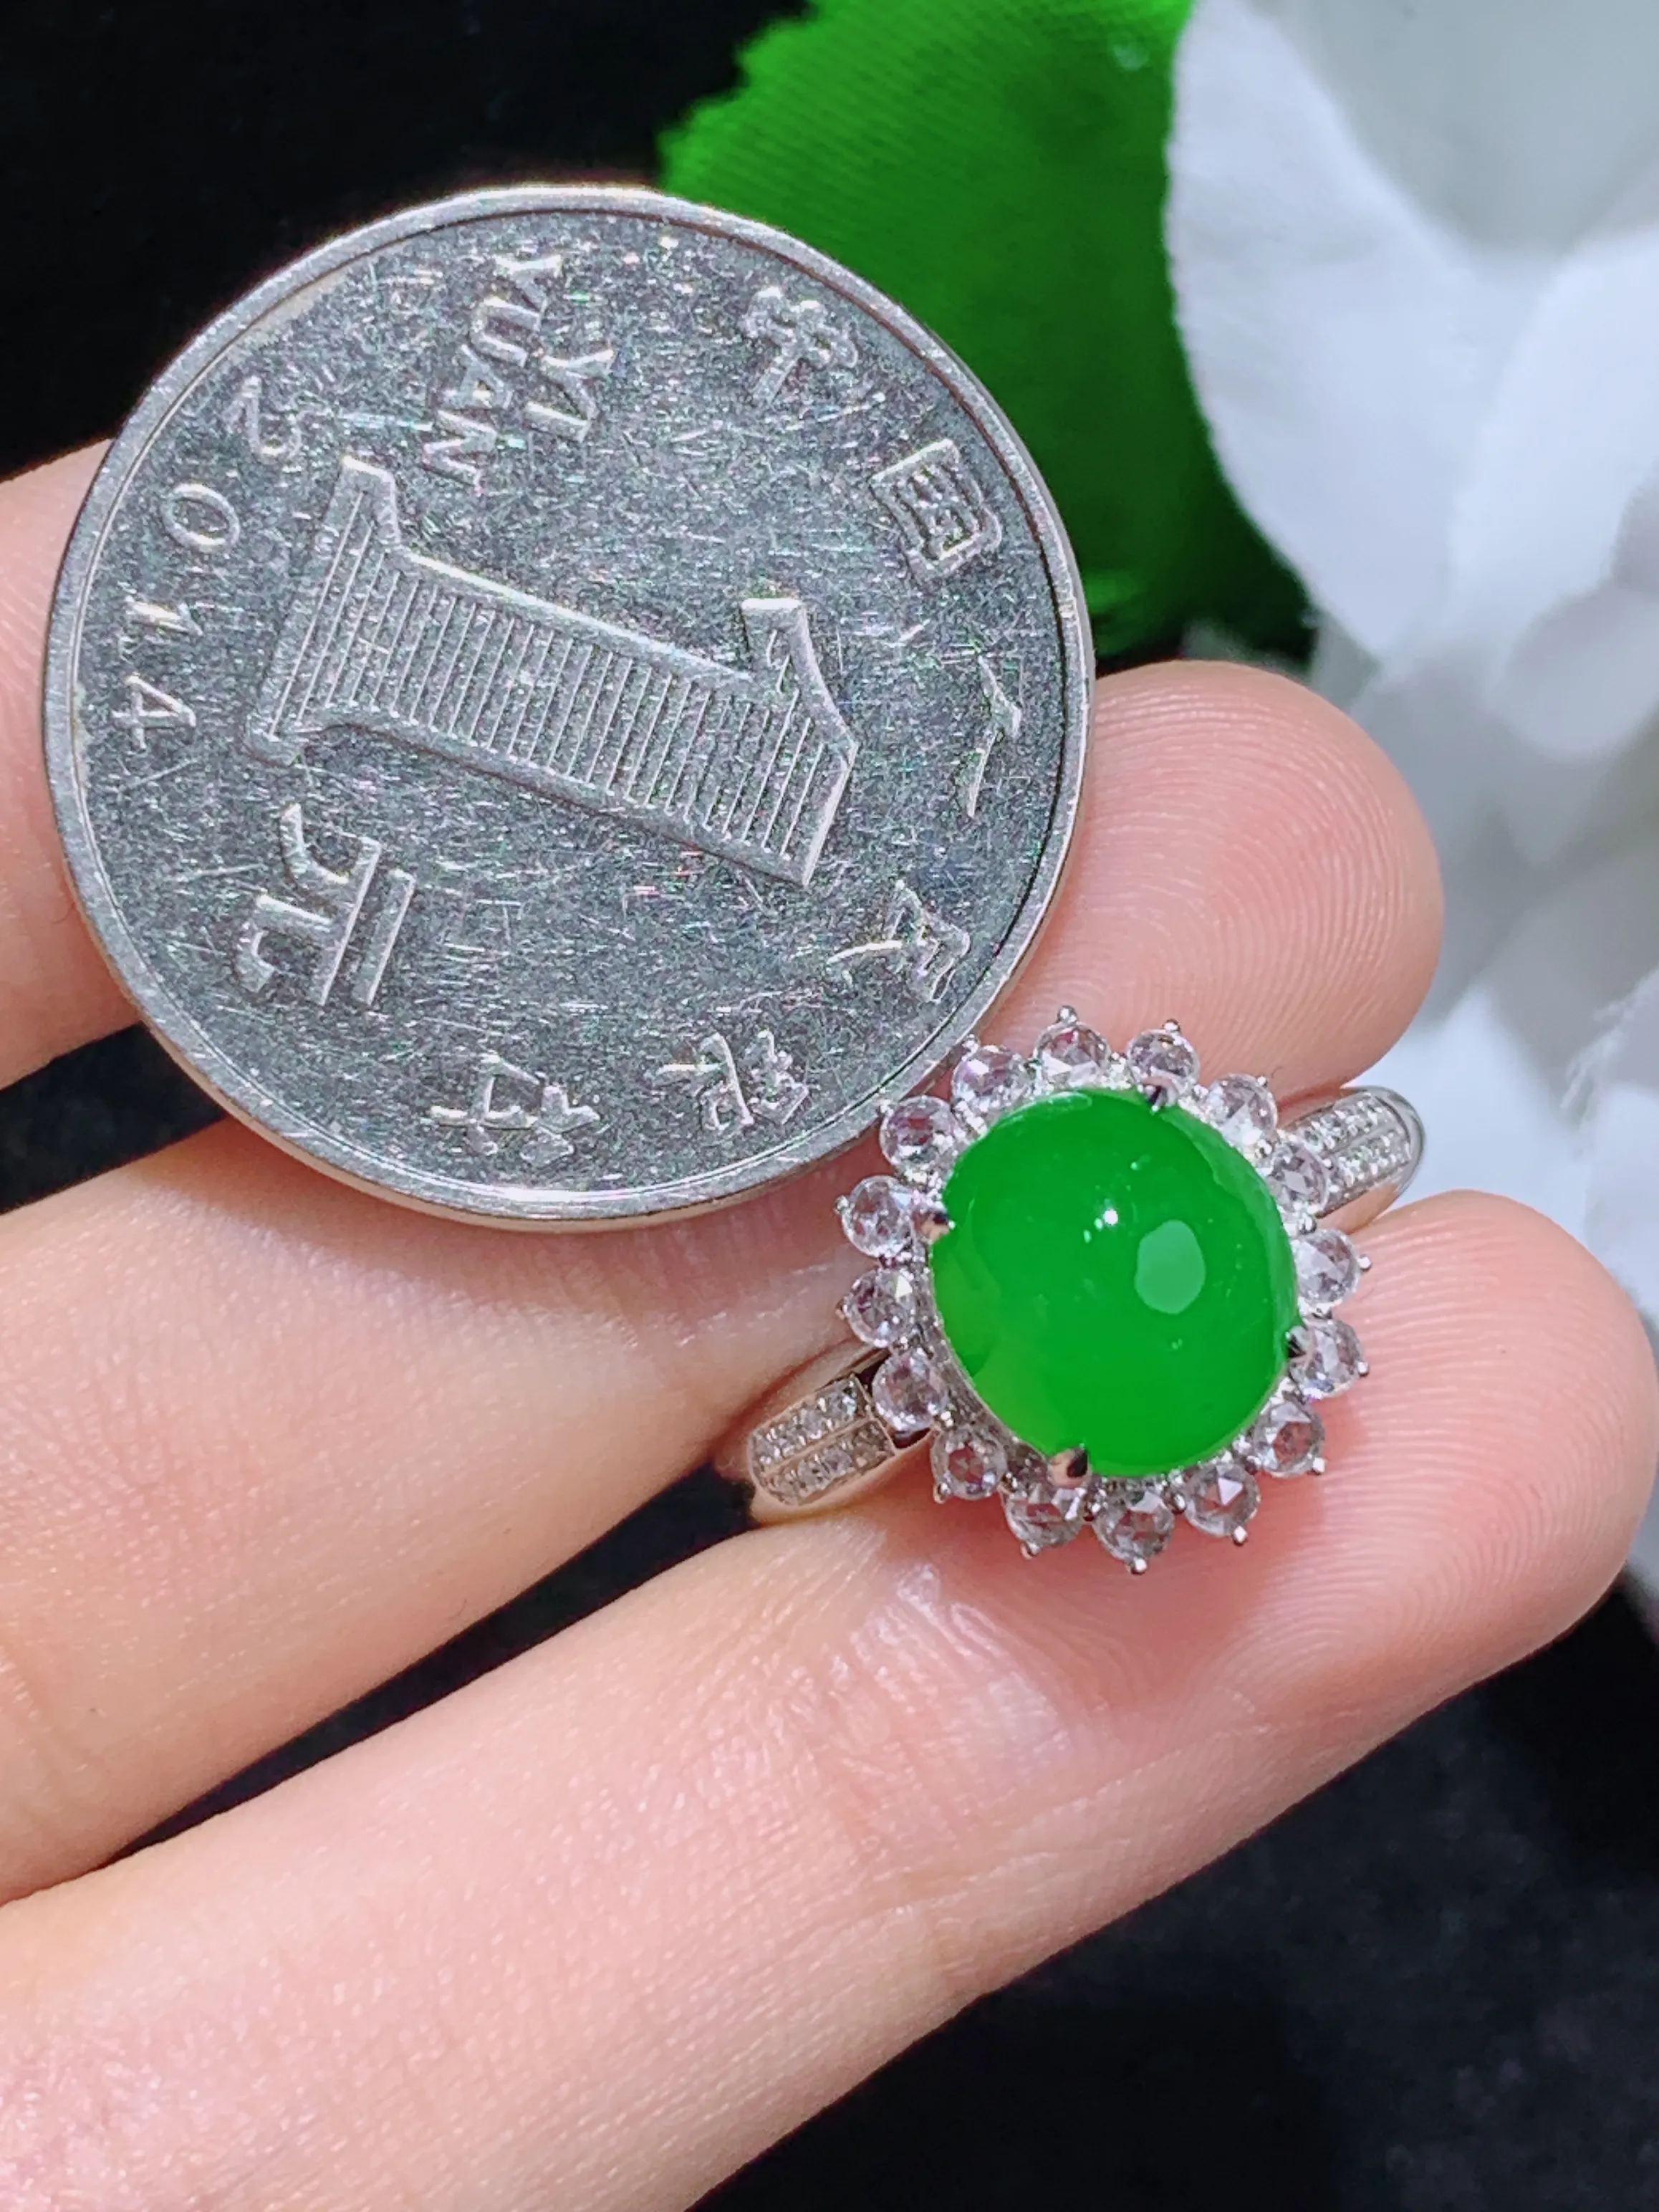 满绿蛋面戒指，18k金镶嵌，冰润细腻，佩戴效果出众，整体尺寸：13.3-12.3